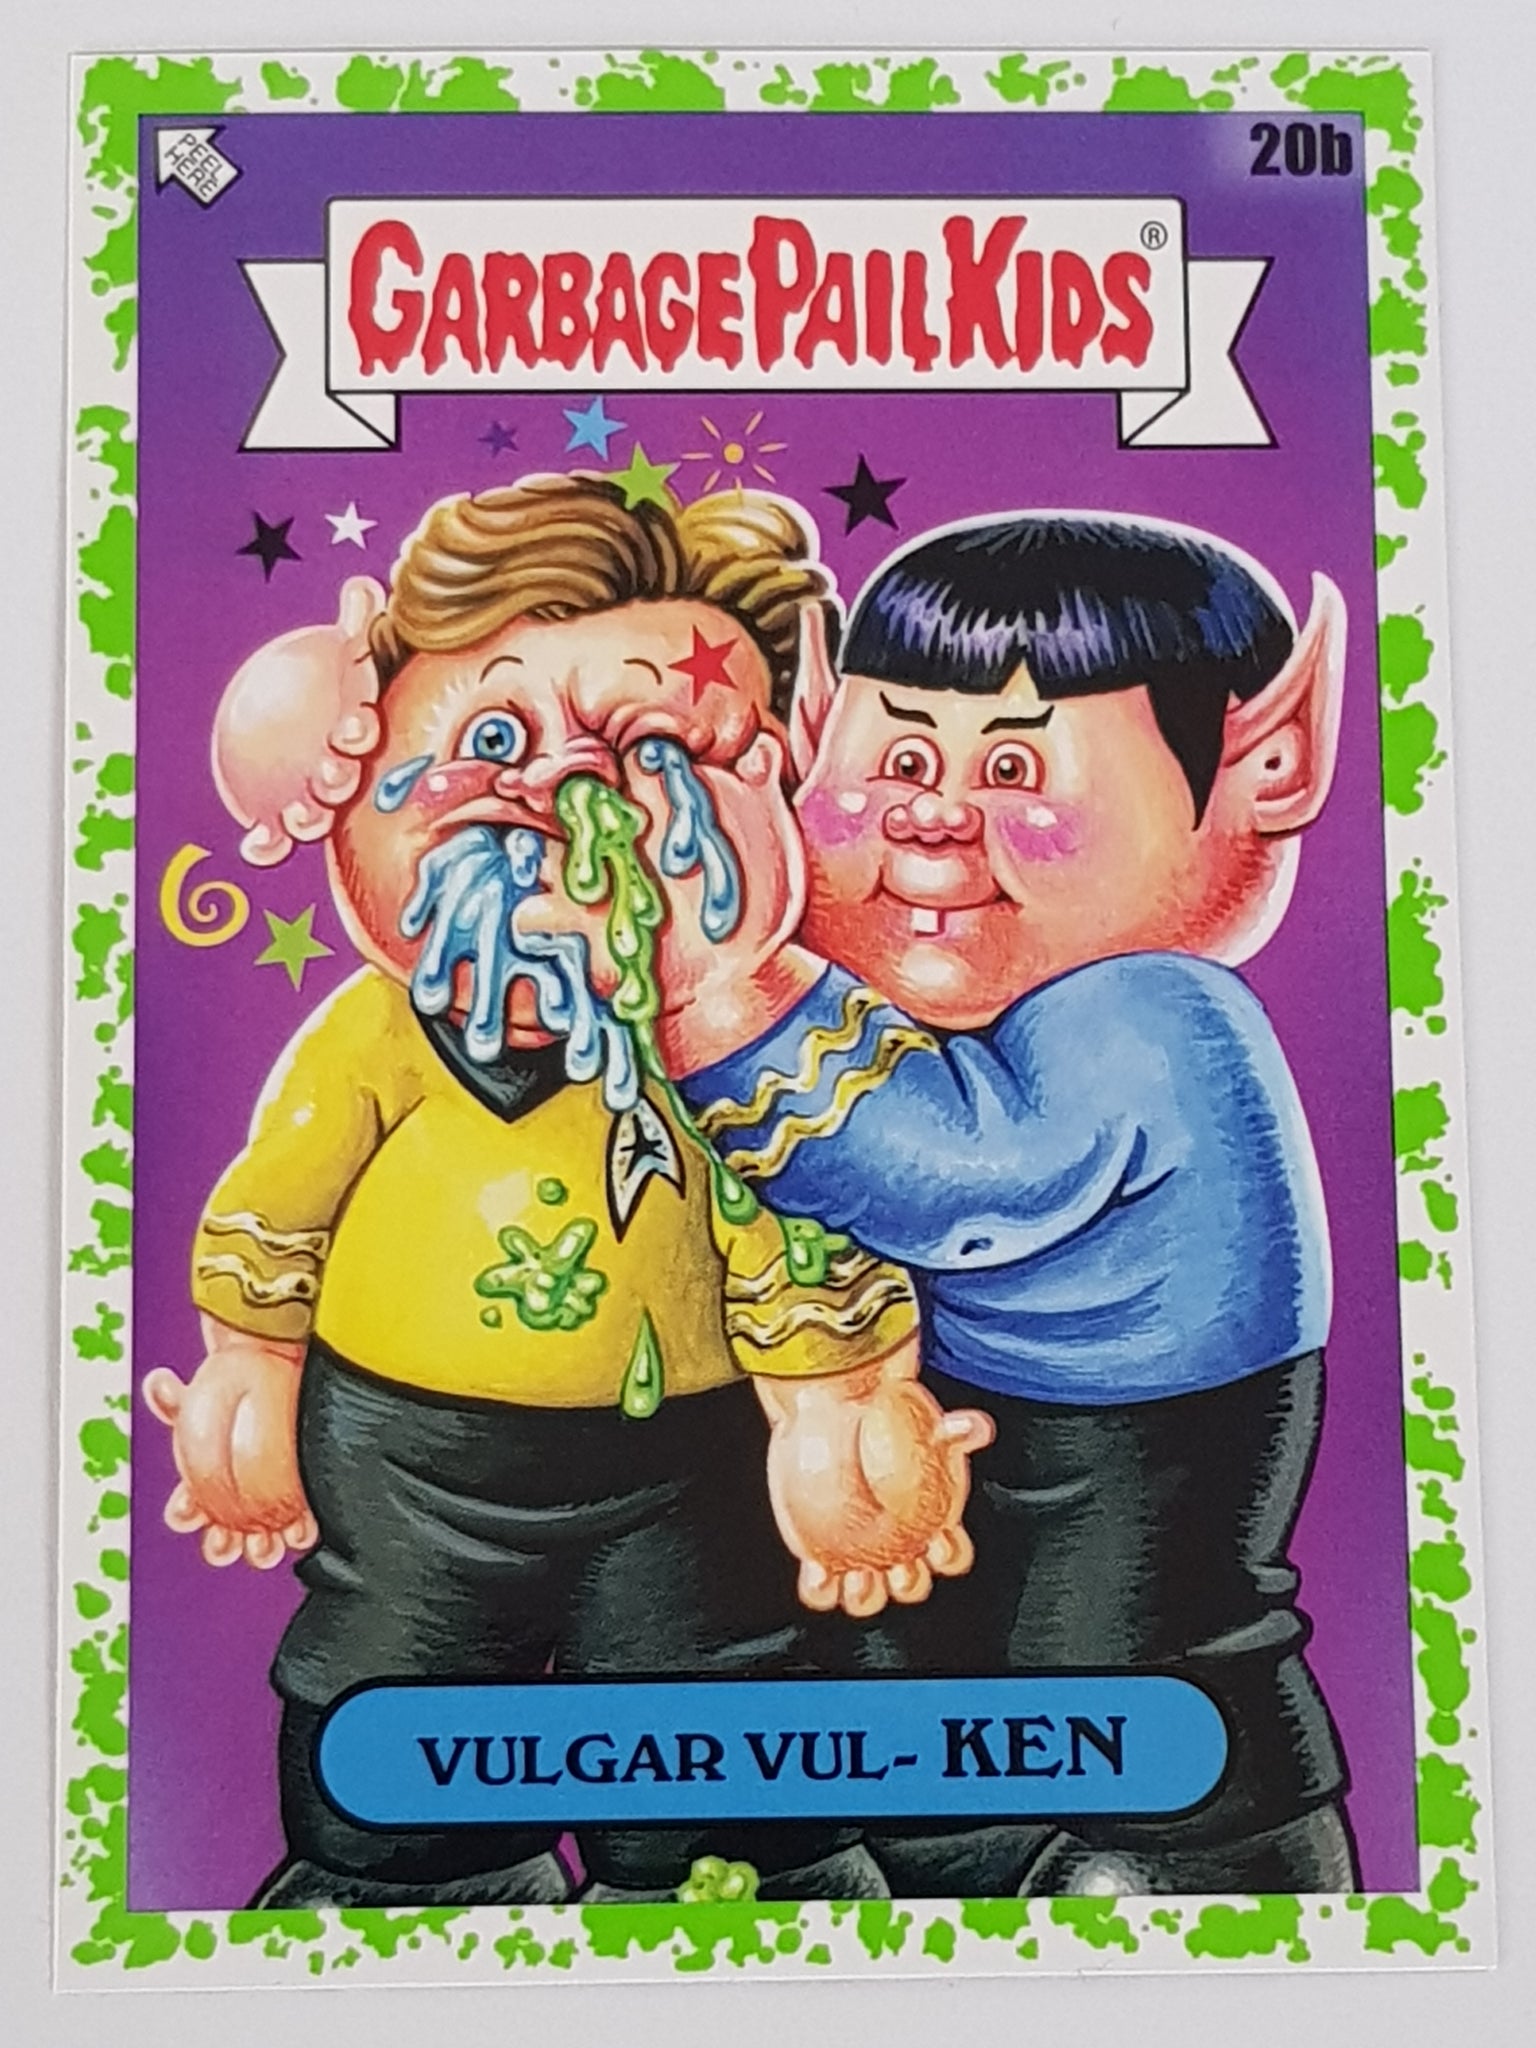 Garbage Pail Kids Intergoolactic Mayhem Vulgar Vul-Ken #20b Booger Green Parallel Trading Card